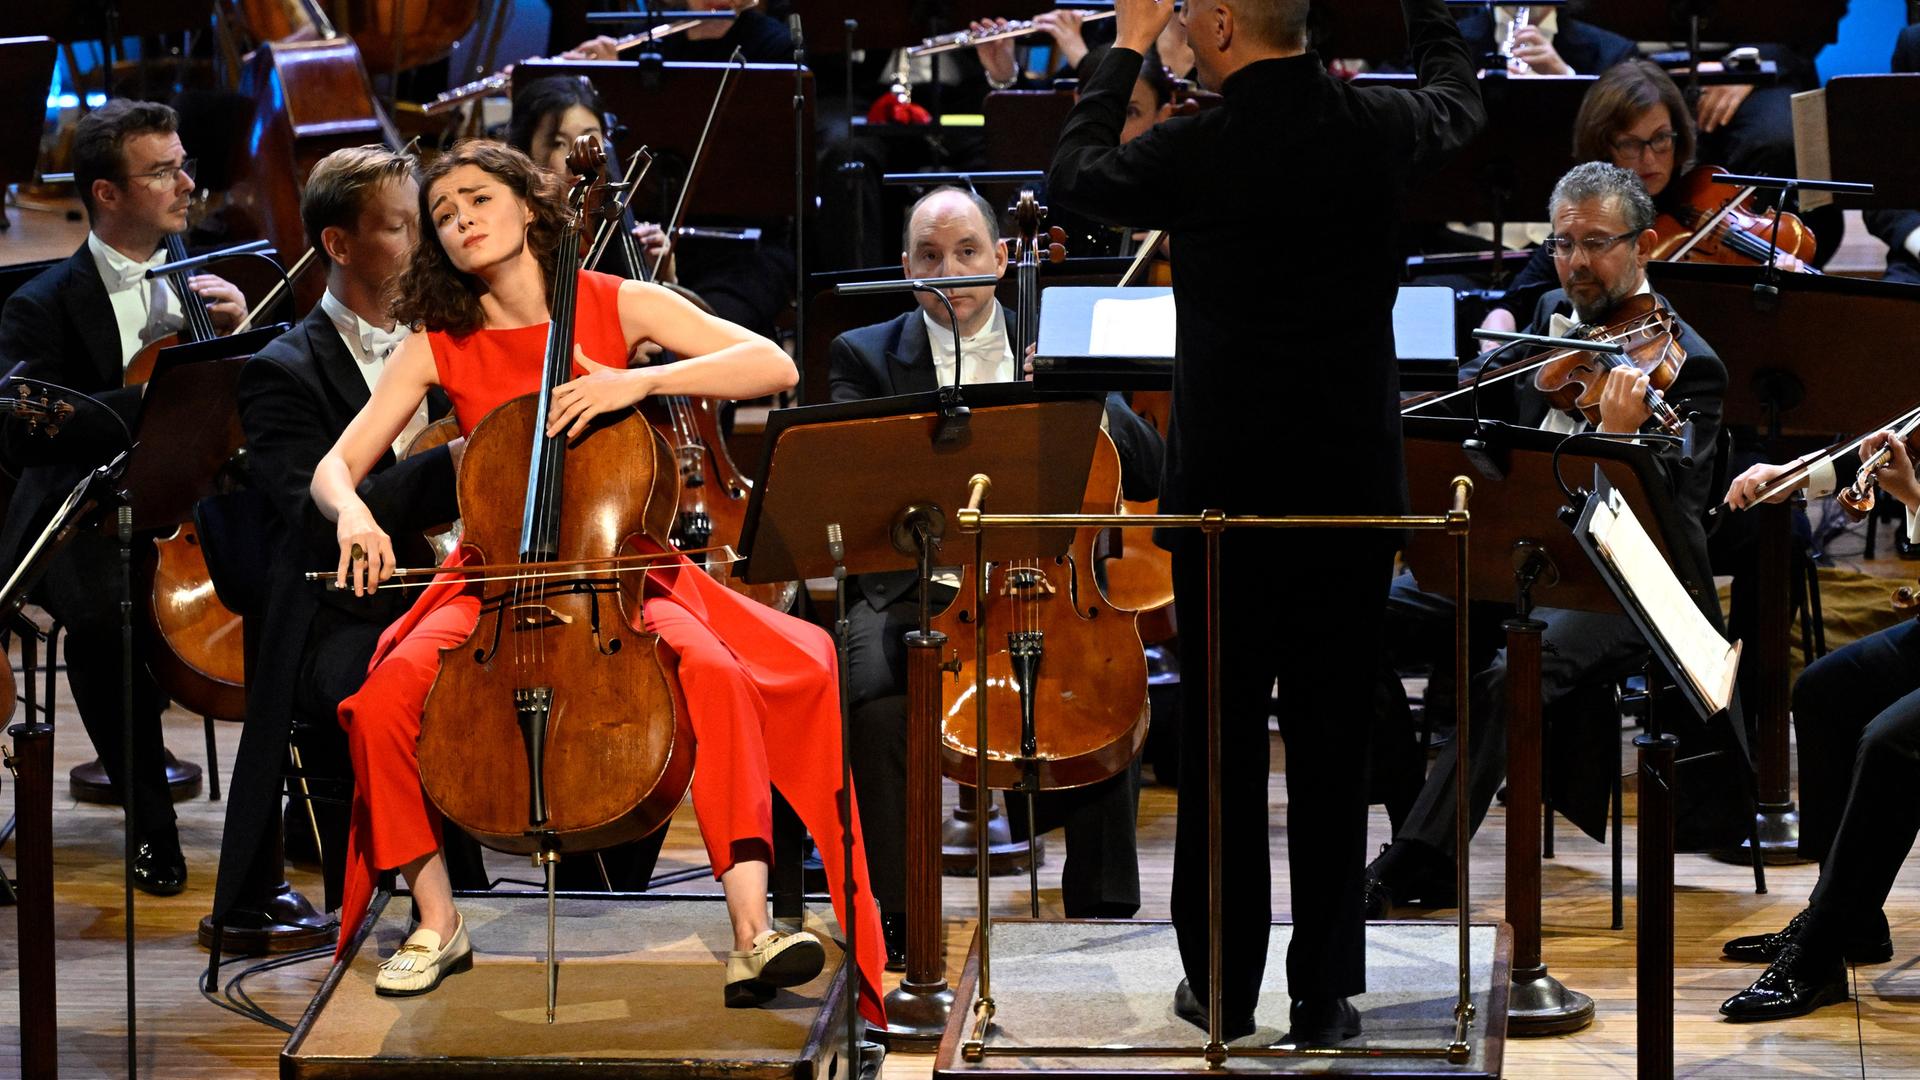 Die Cellist Anastasia Kobekina sitzt an ihrem Instrument auf der Bühne vor einem Orchester, rechts neben ihr der Dirigent Paavo Jarvi.